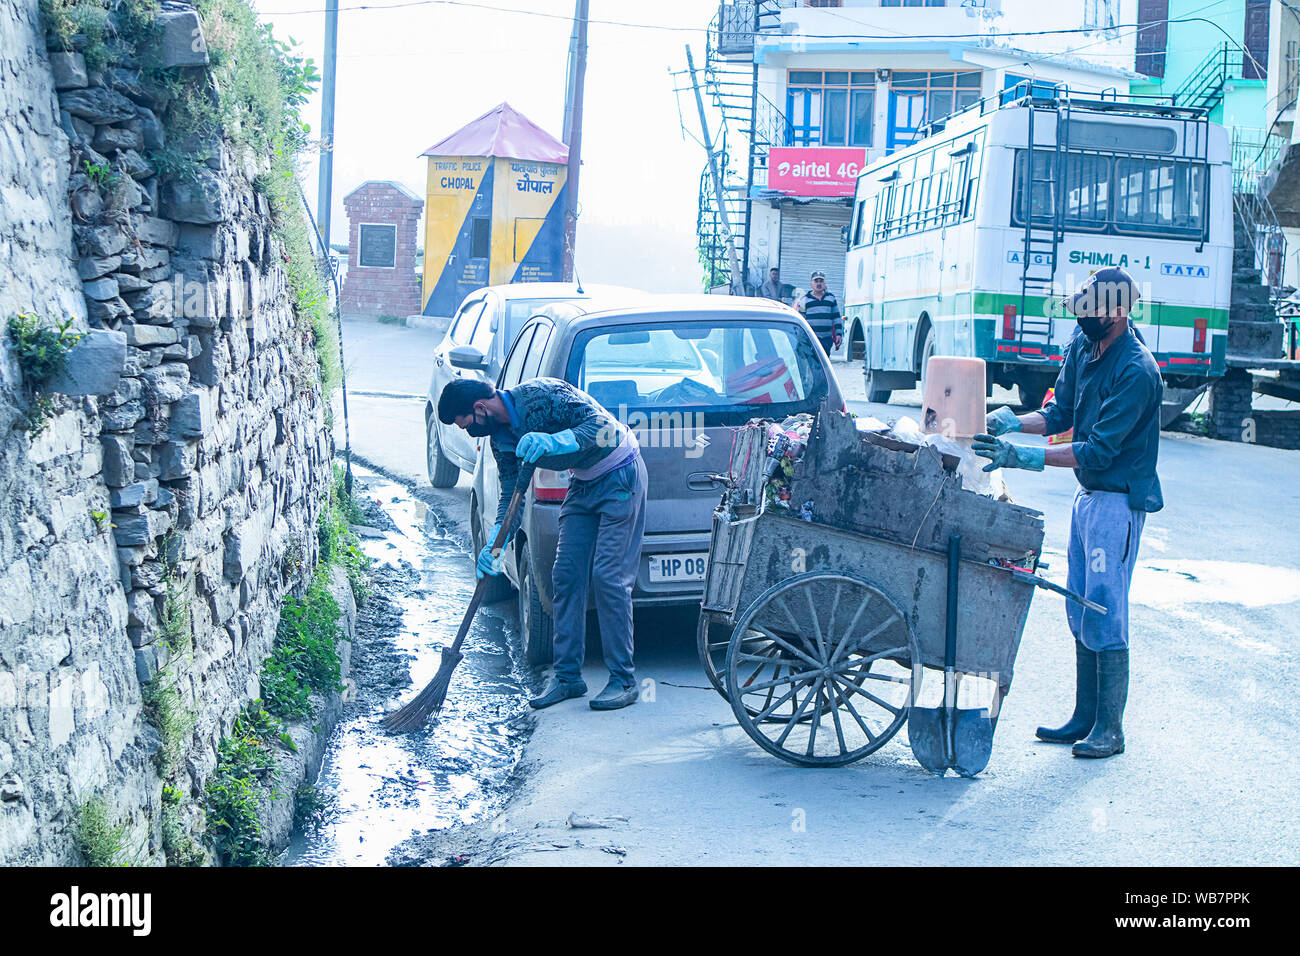 Shimla, Himachal Pradesh, Inde - Juillet 20th, 2019 : employé municipal balayer le système routier et de drainage avec balai et collecte des déchets, assainissement worke Banque D'Images